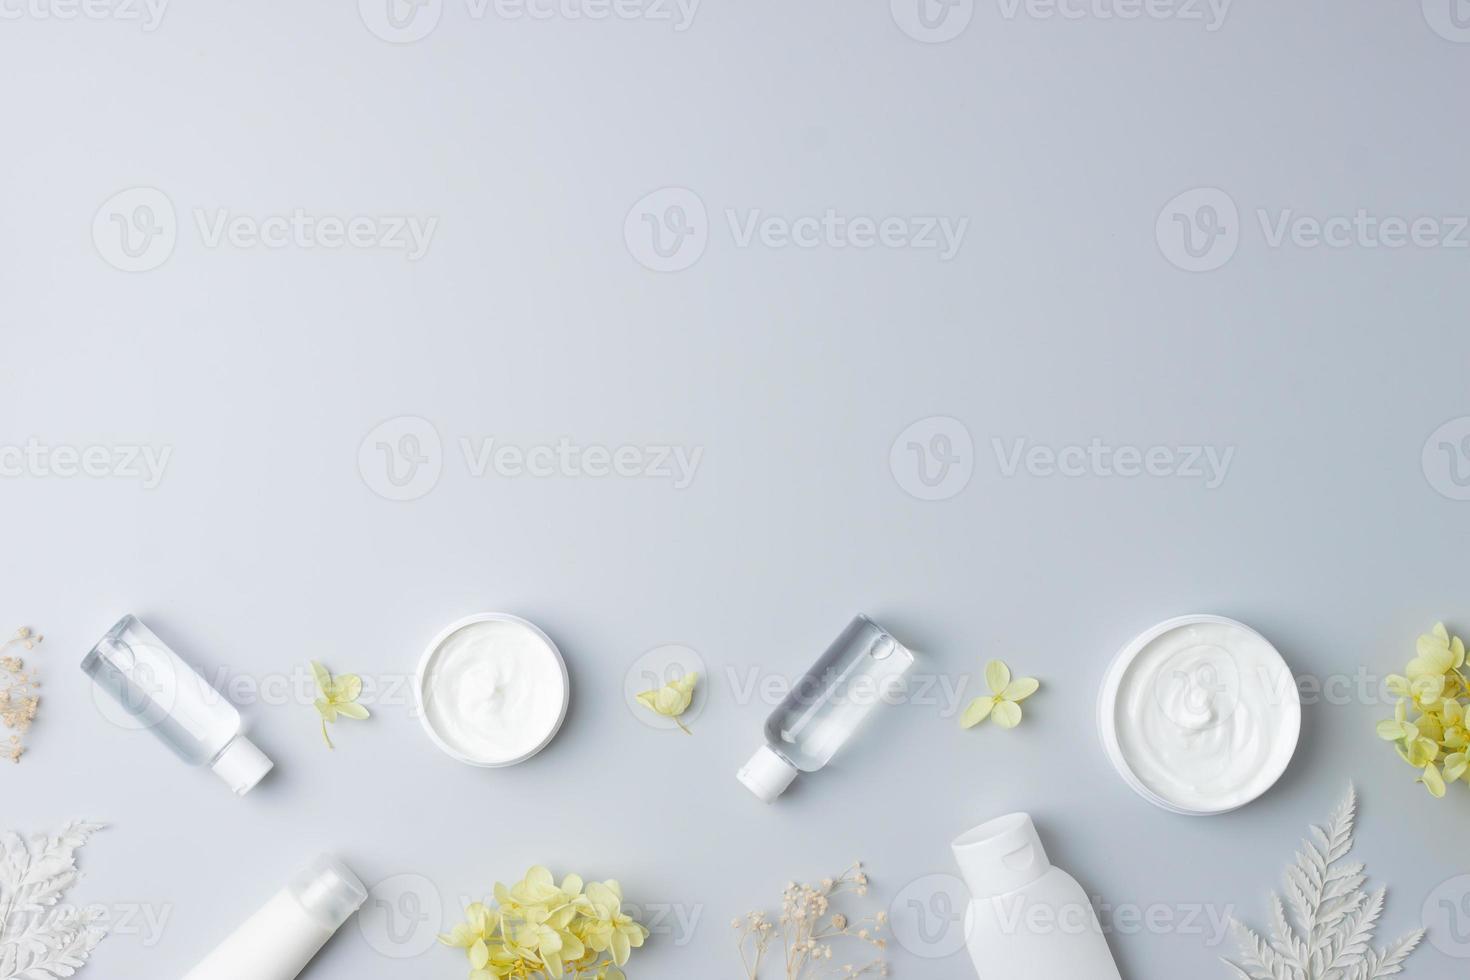 productos cosméticos para el cuidado de la piel con flores sobre fondo gris. endecha plana, espacio de copia foto